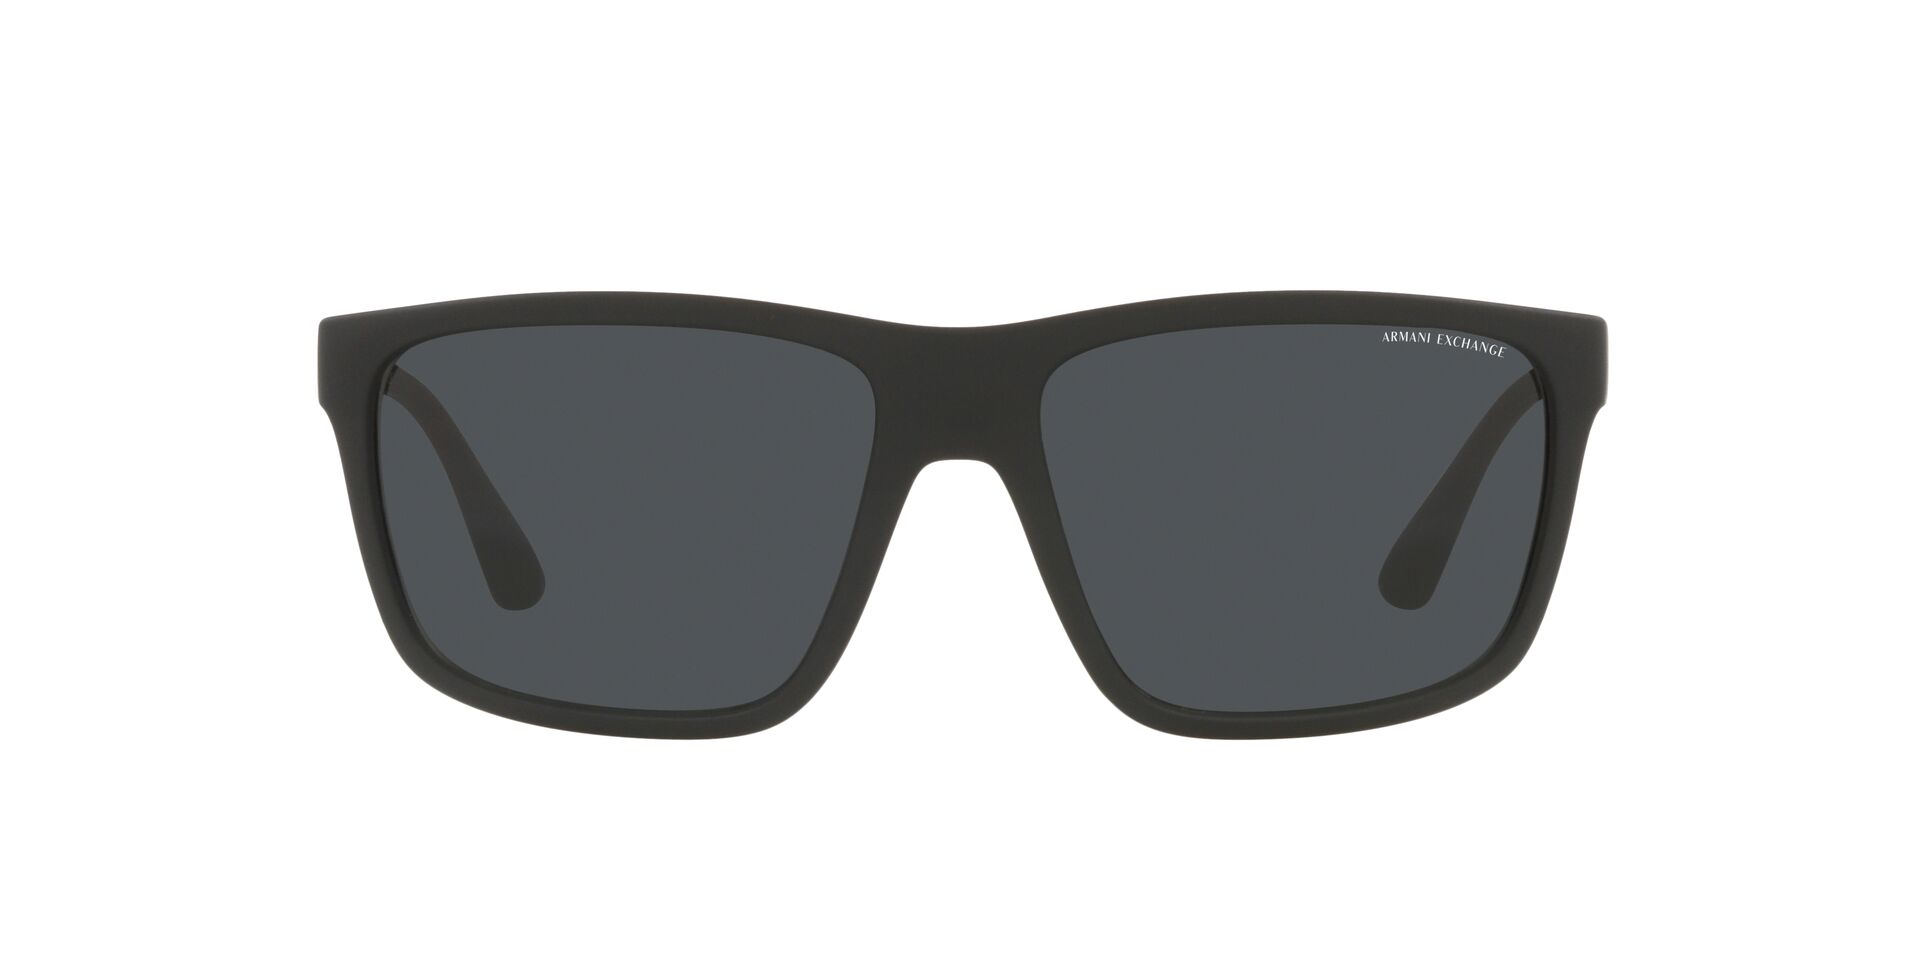 Armani Exchange Mirrored Silver Square Men's Sunglasses, 51% OFF